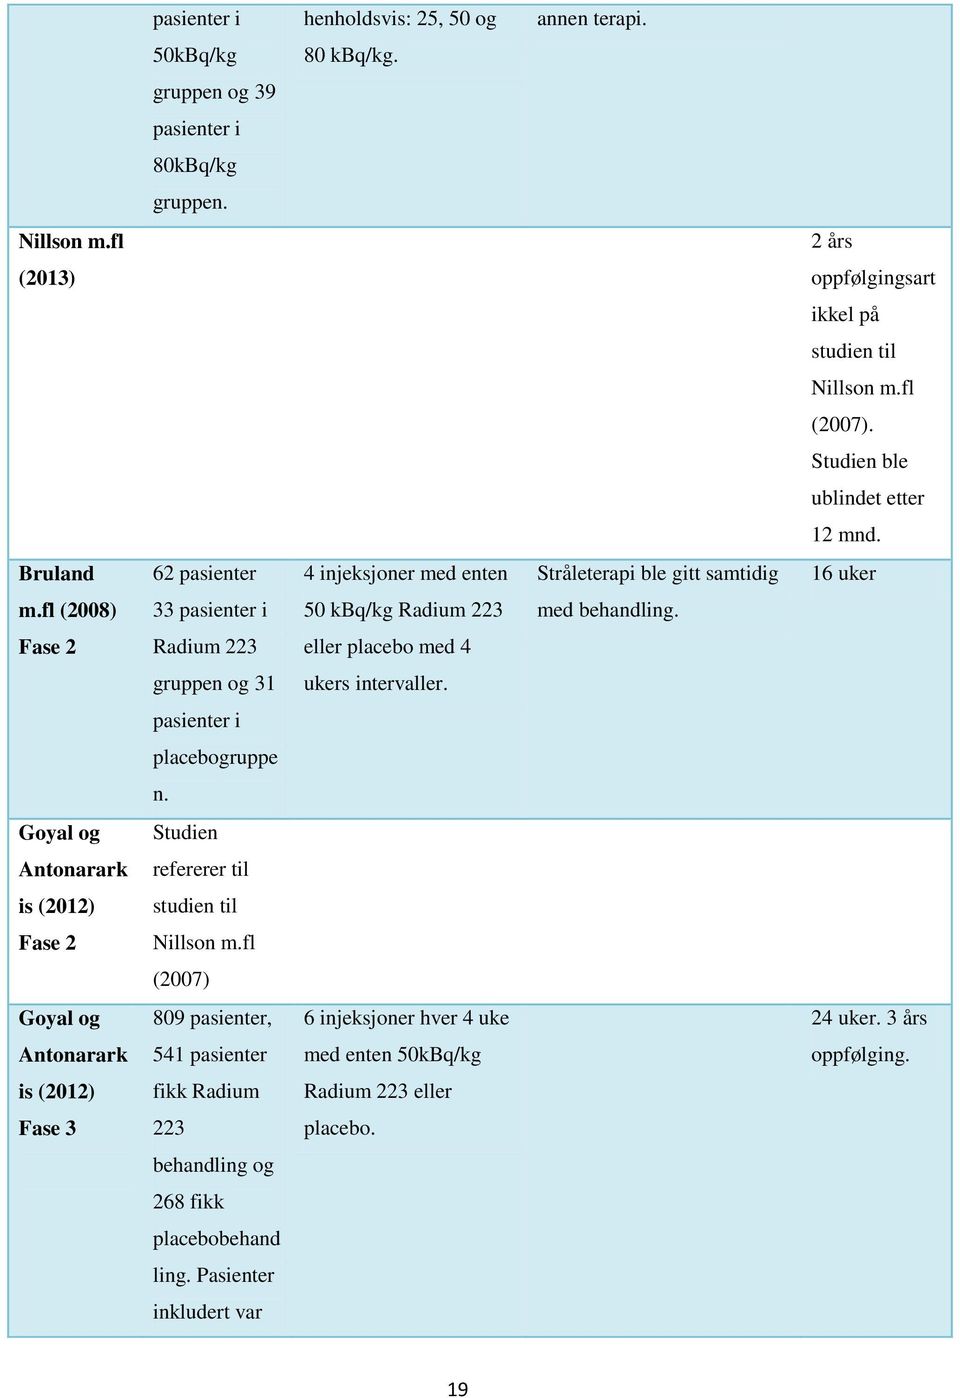 Fase 2 Radium 223 eller placebo med 4 gruppen og 31 ukers intervaller. pasienter i placebogruppe n. Goyal og Studien Antonarark refererer til is (2012) studien til Fase 2 Nillson m.